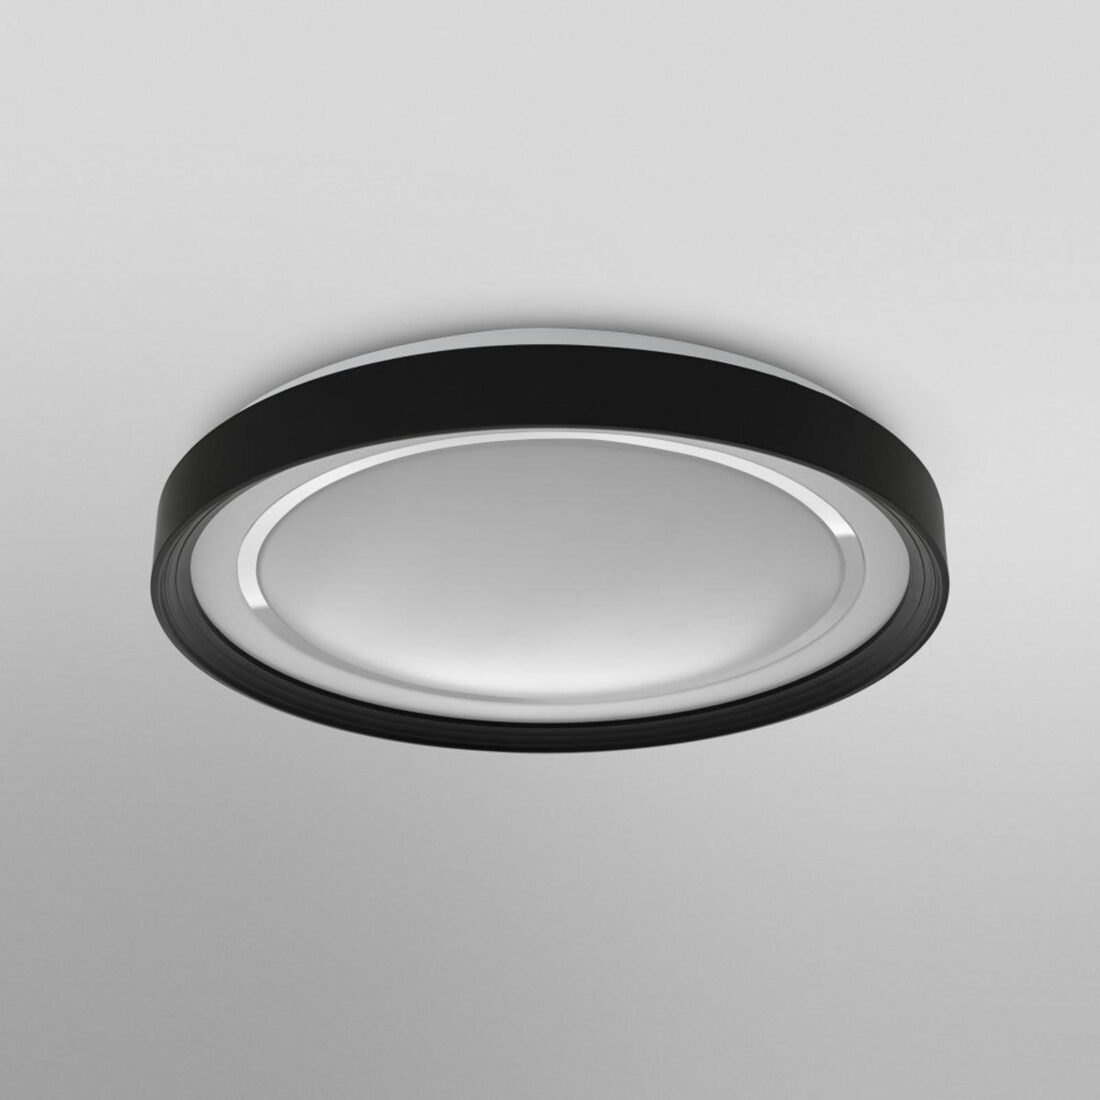 LEDVANCE SMART+ WiFi Orbis Gavin LED světlo